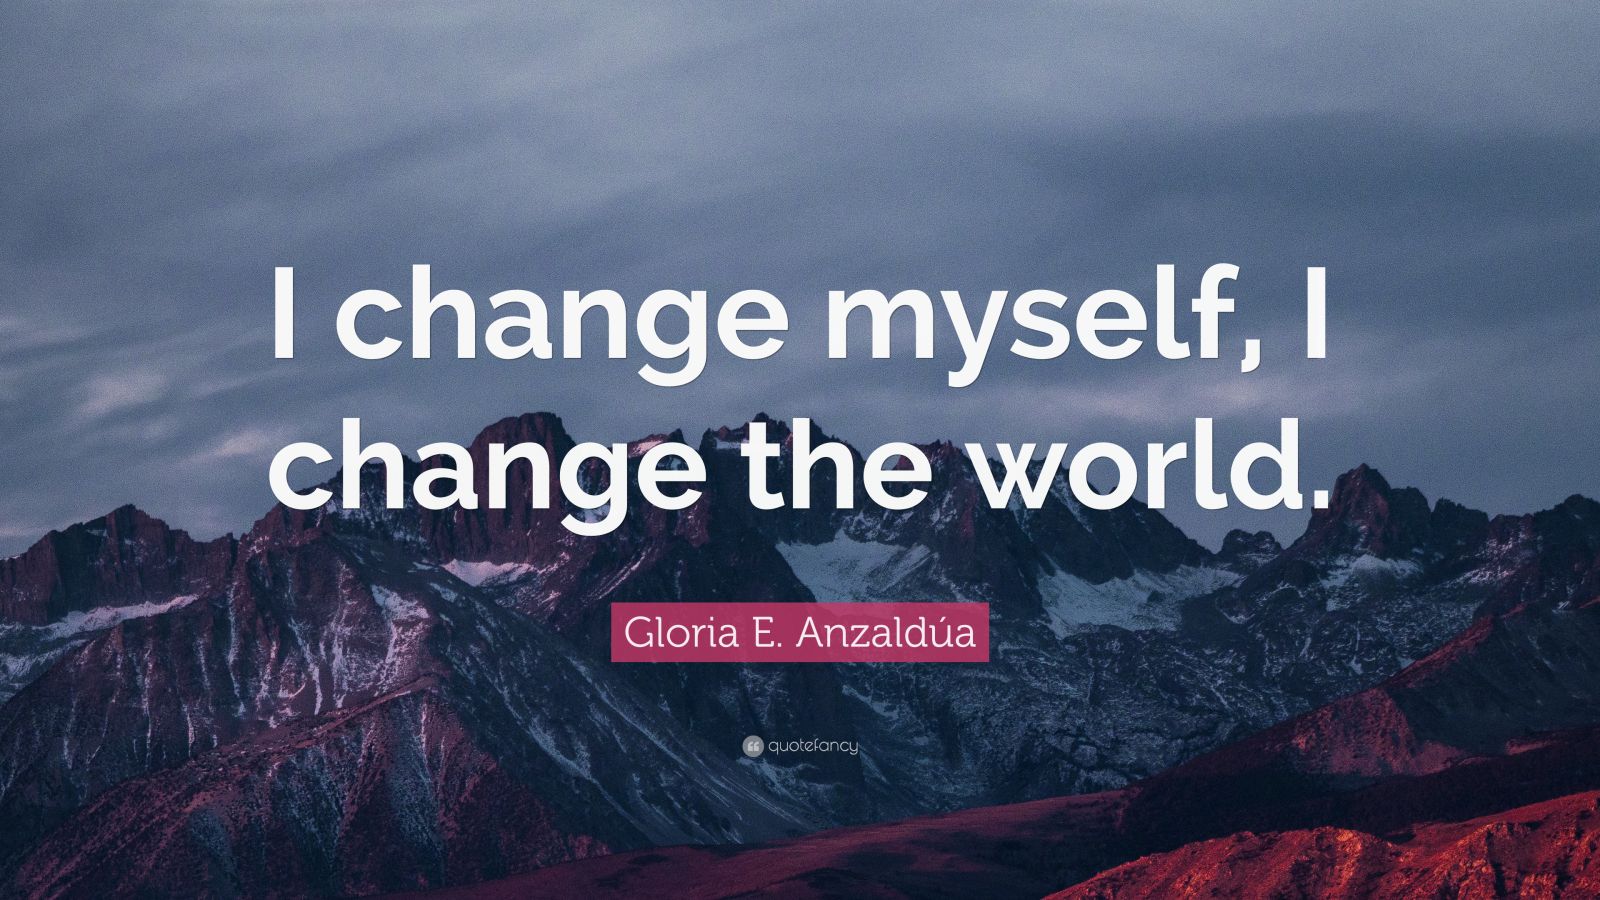 Gloria E. Anzaldúa Quote: “I change myself, I change the world.” (12 ...